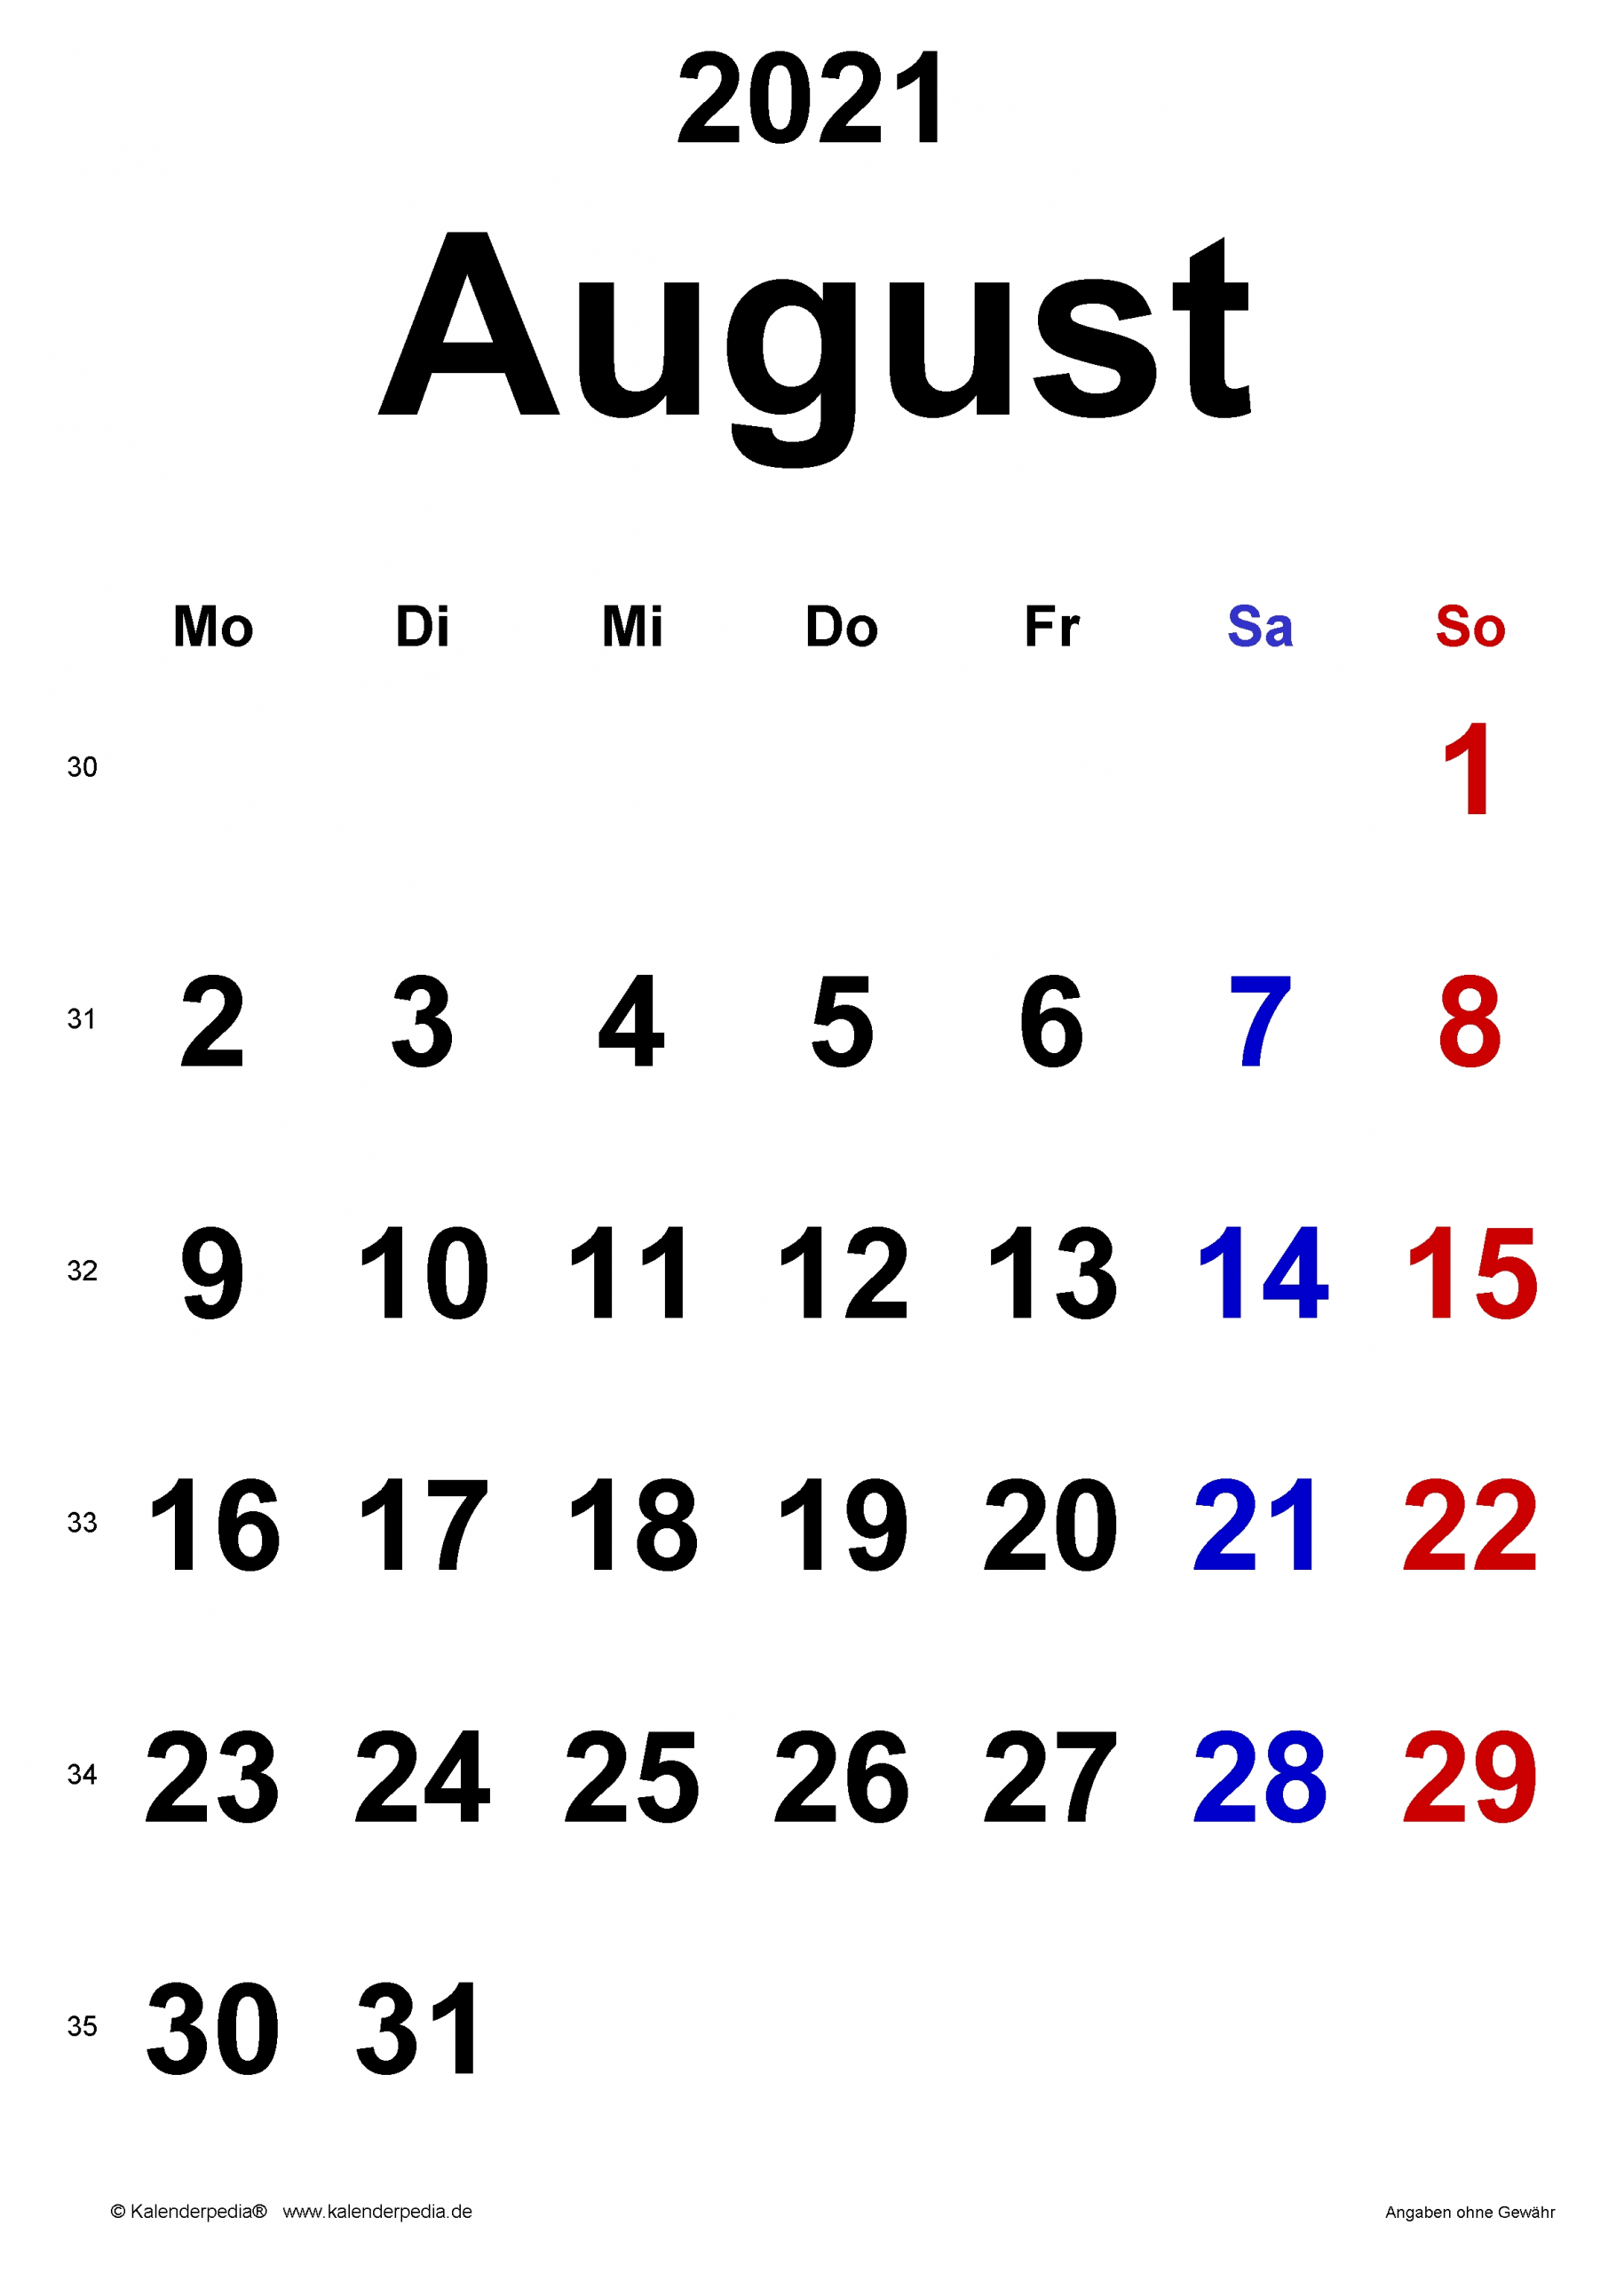 Catch Kalenderblatt August 2021 Zum Ausdrucken - Best Calendar Example